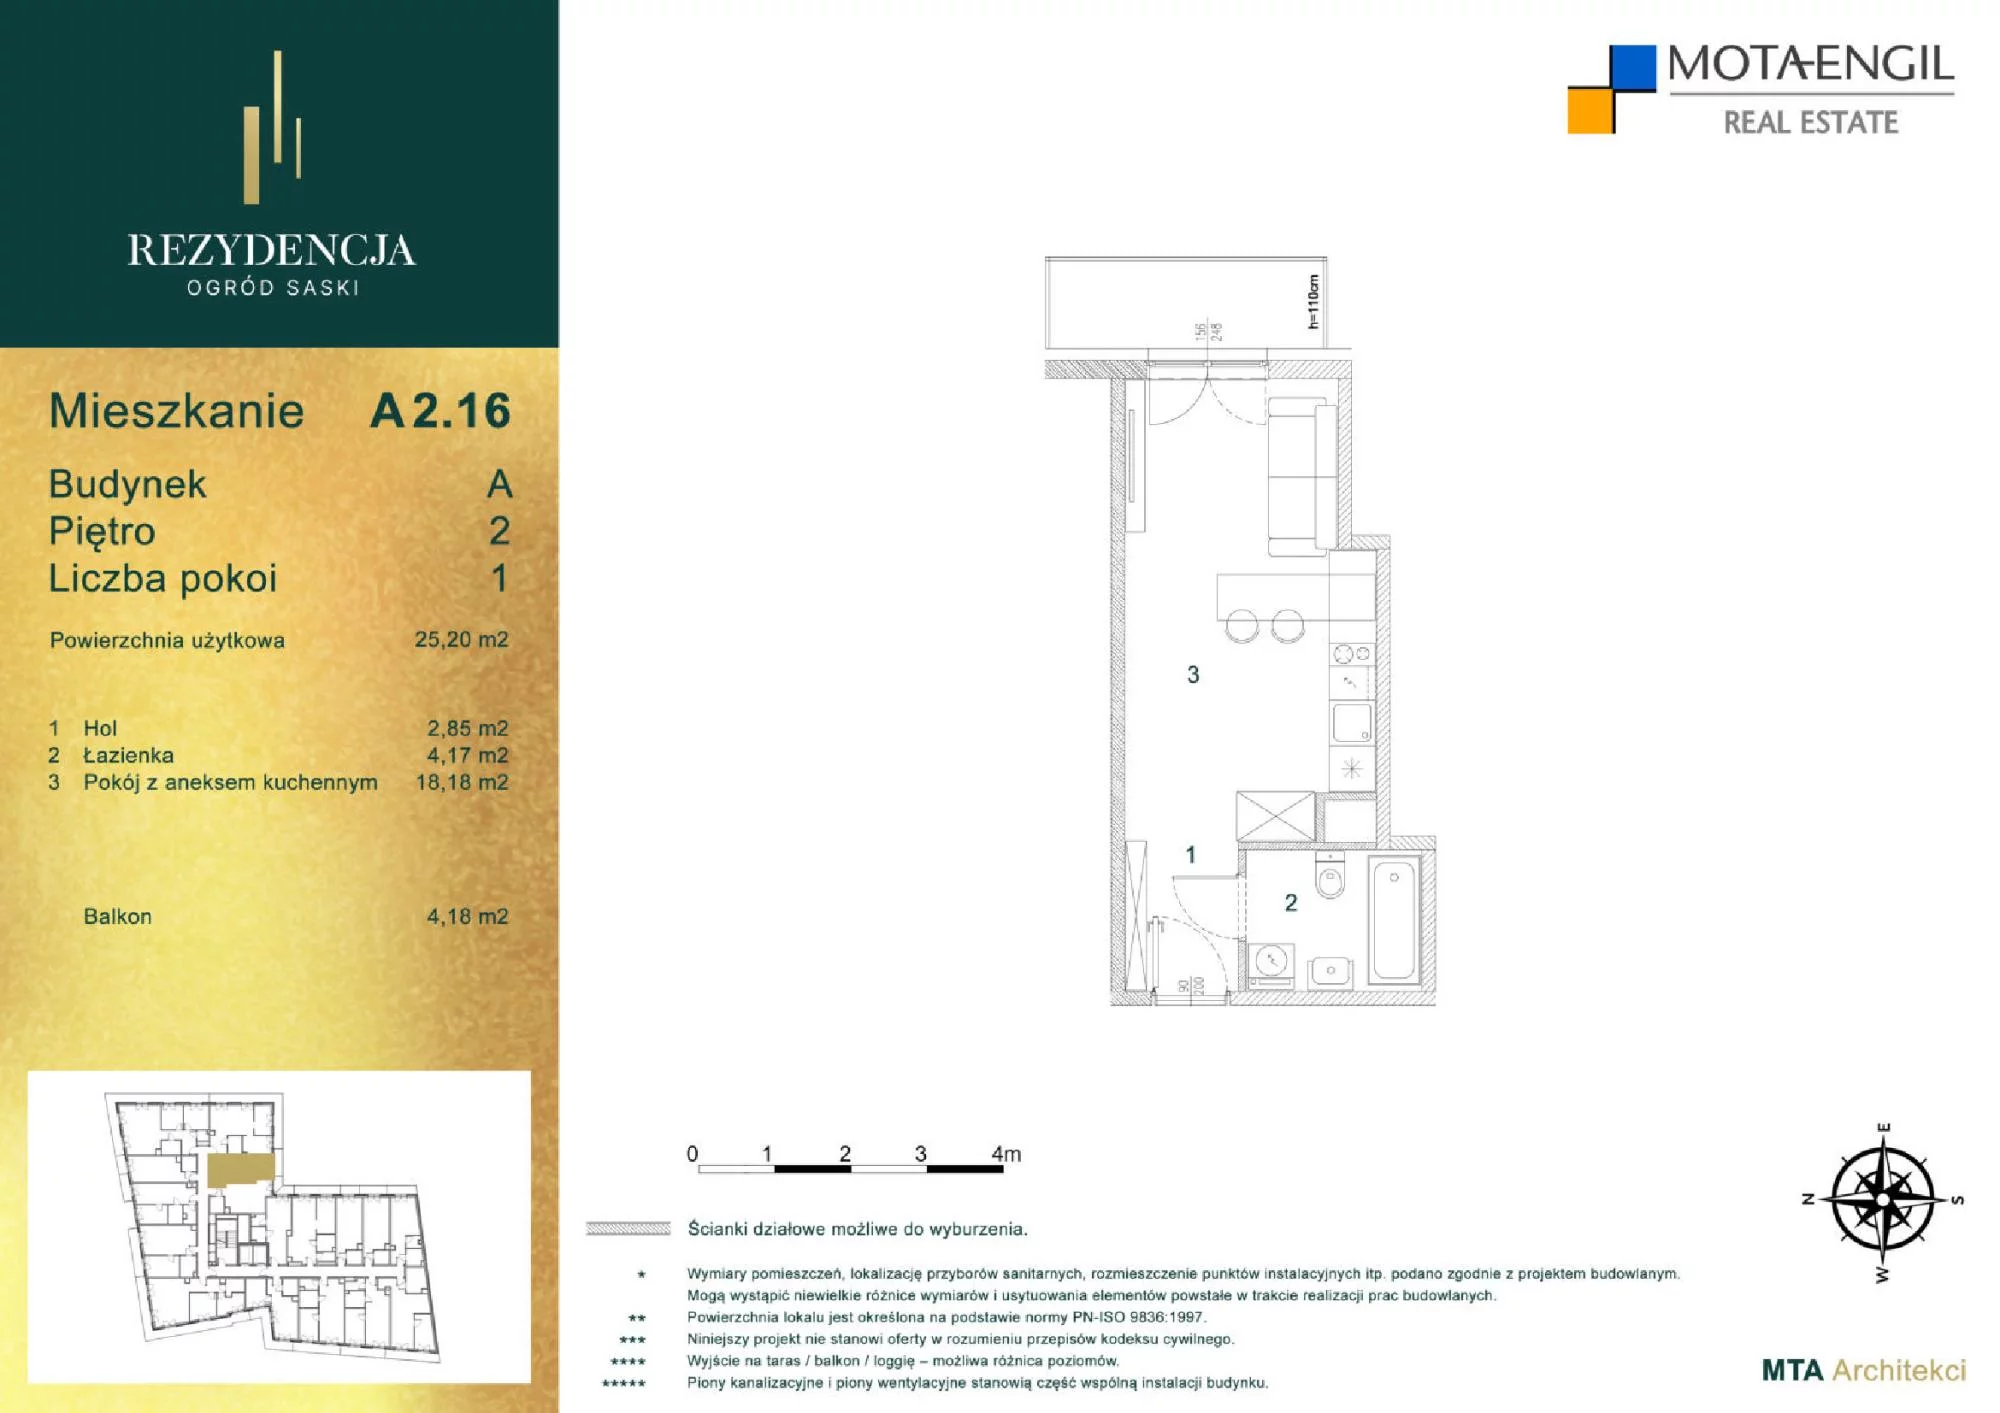 Mieszkanie 25,20 m², piętro 2, oferta nr A2.16, Rezydencja Ogród Saski, Lublin, Wieniawa, ul. Jasna 7, 7A